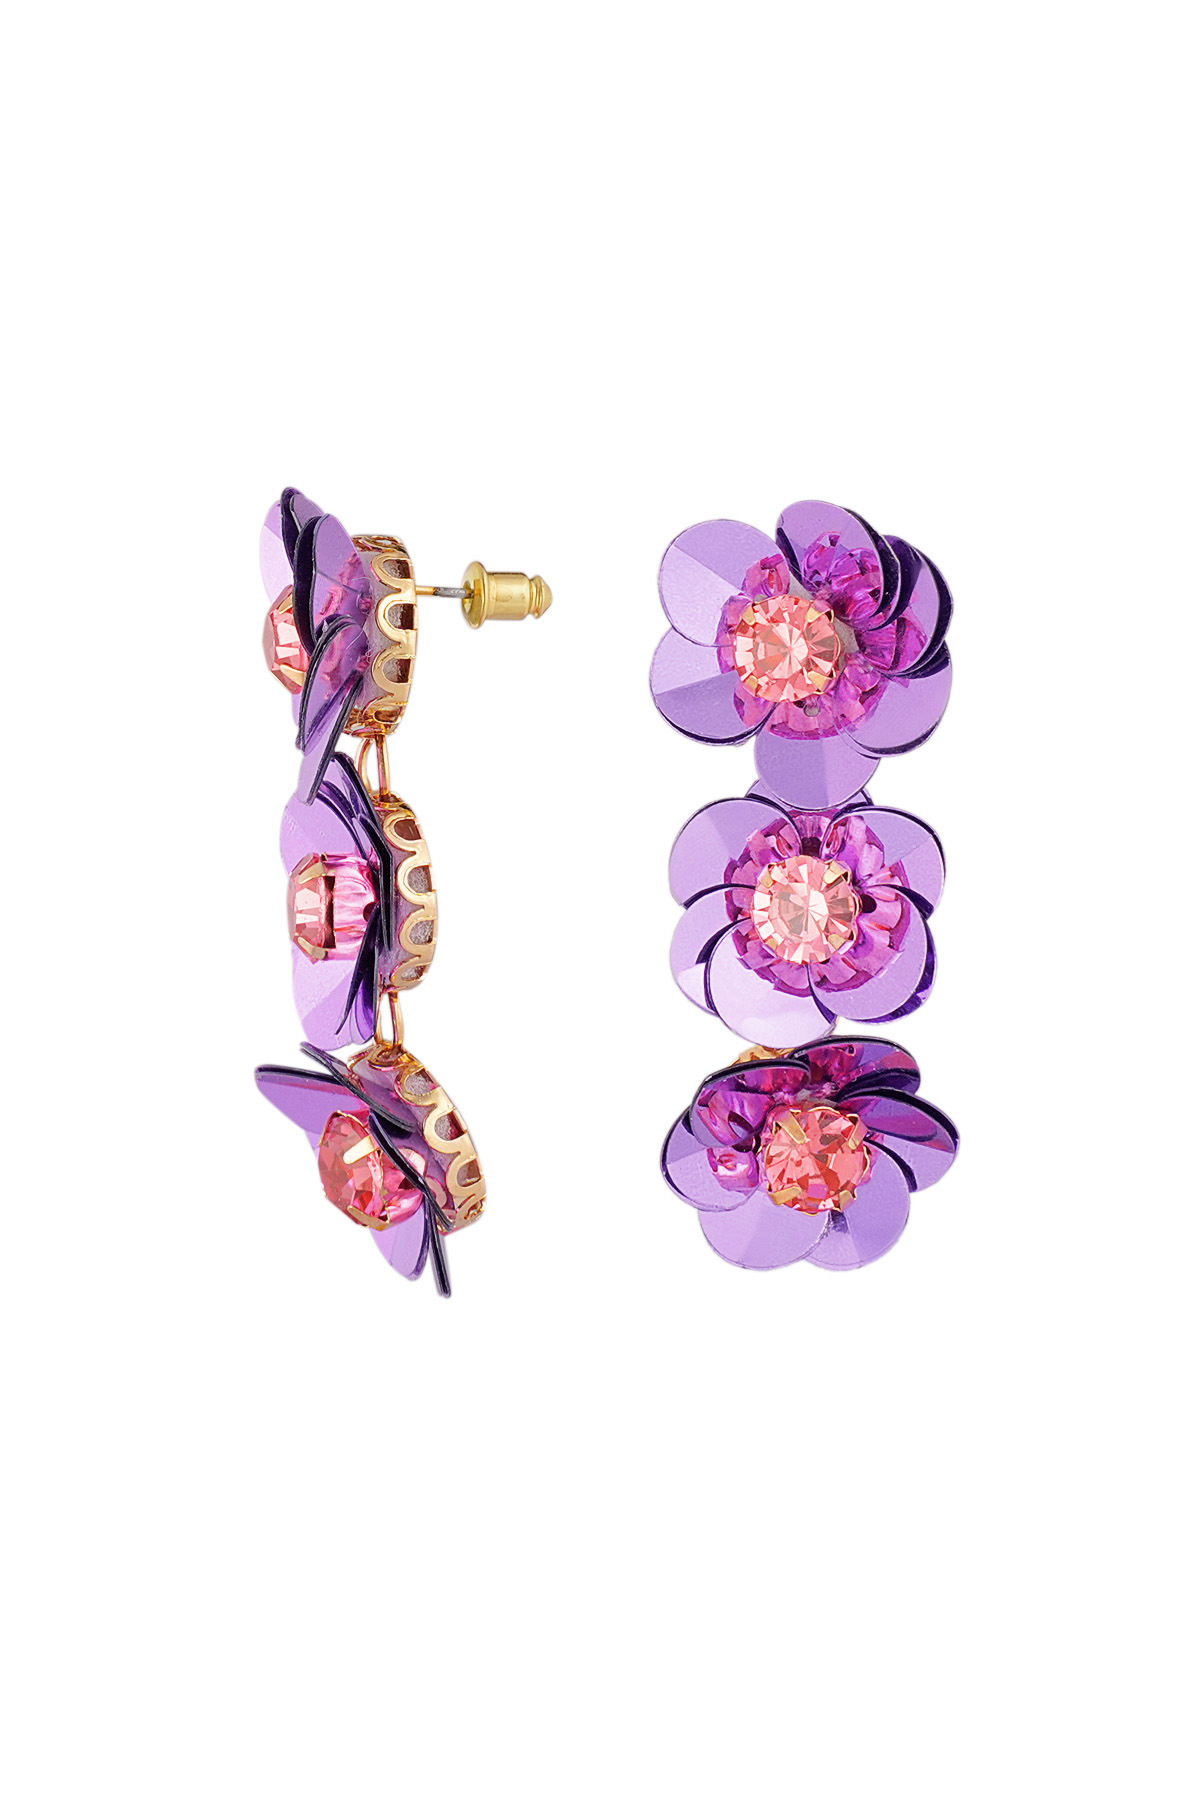 Summery floral trio earrings - purple